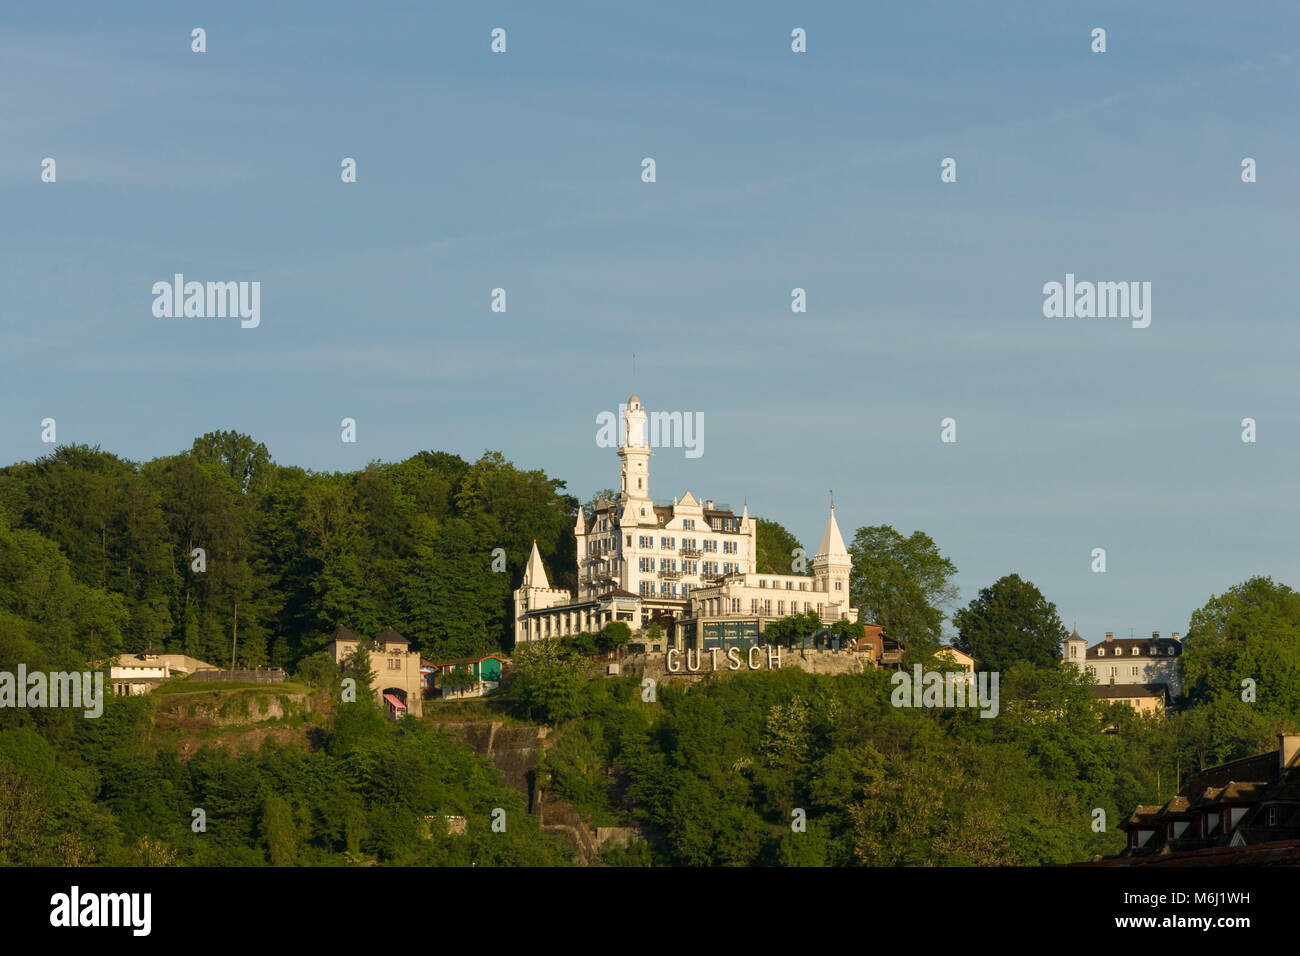 Célèbre 5 étoiles luxe Hôtel château Gutsch perché sur la colline au-dessus de Lucerne Suisse entouré de forêt vert fond de ciel bleu de l'espace négatif Pan Banque D'Images